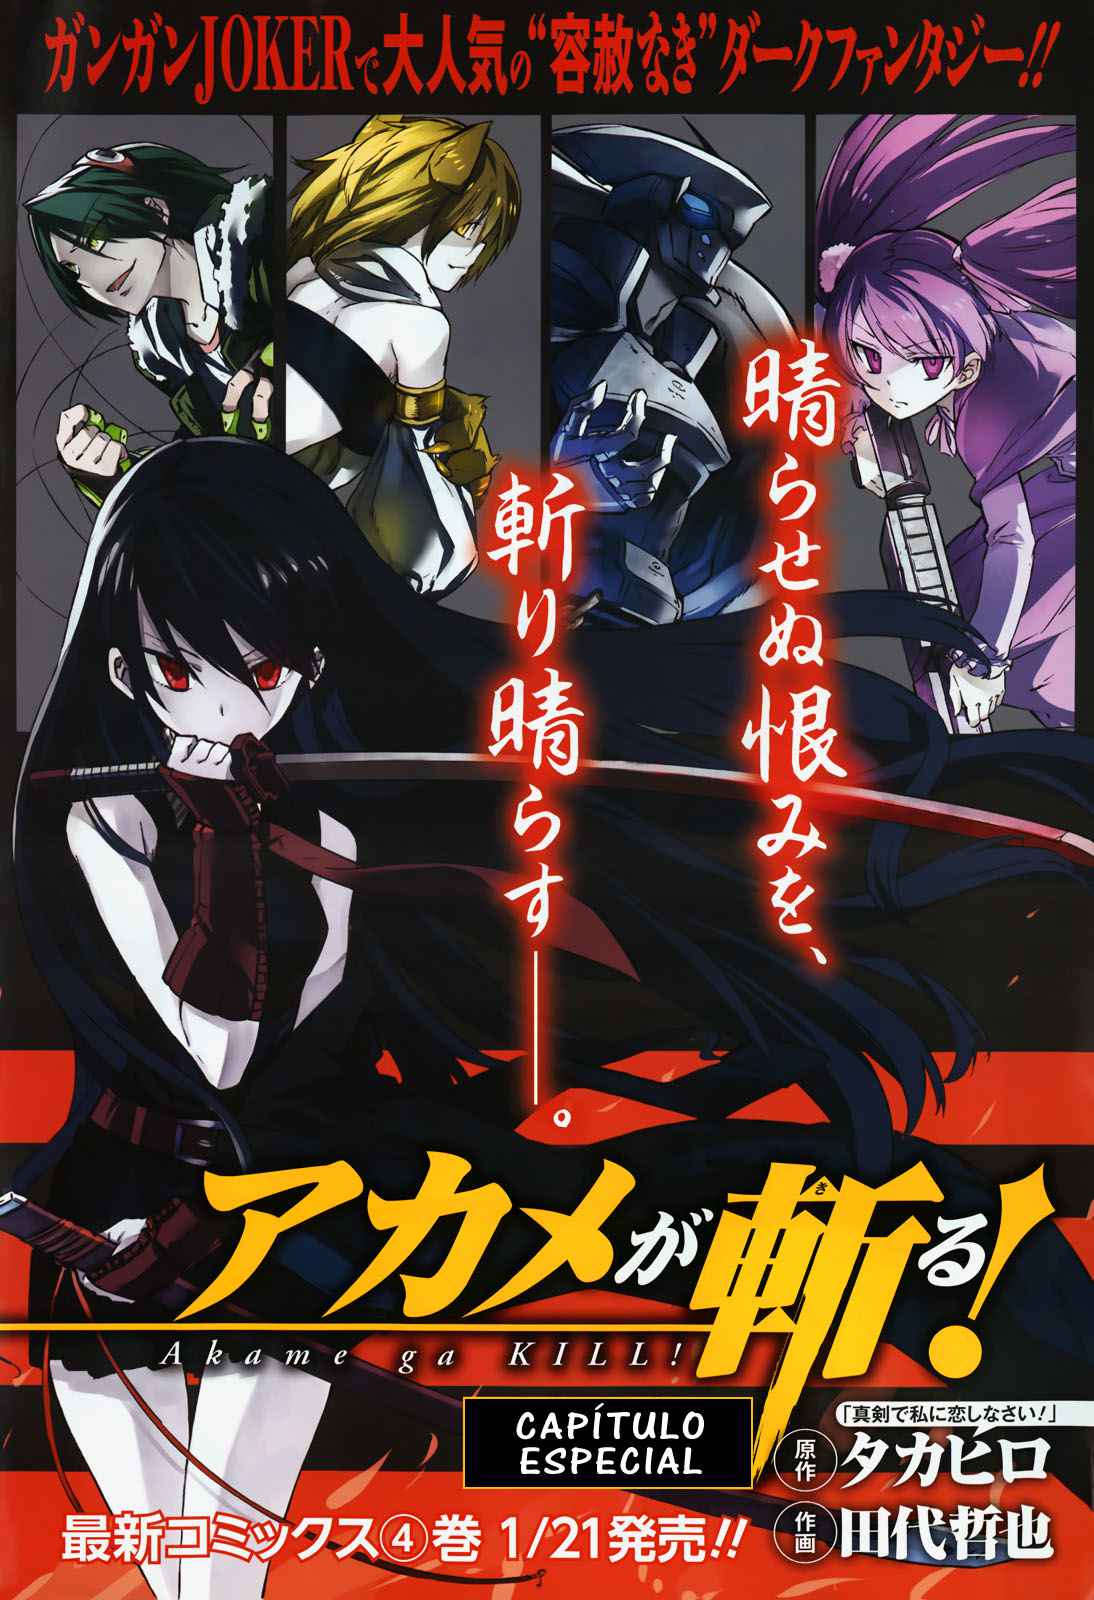 Último capítulo de Akame ga Kill tem data de lançamento revelada